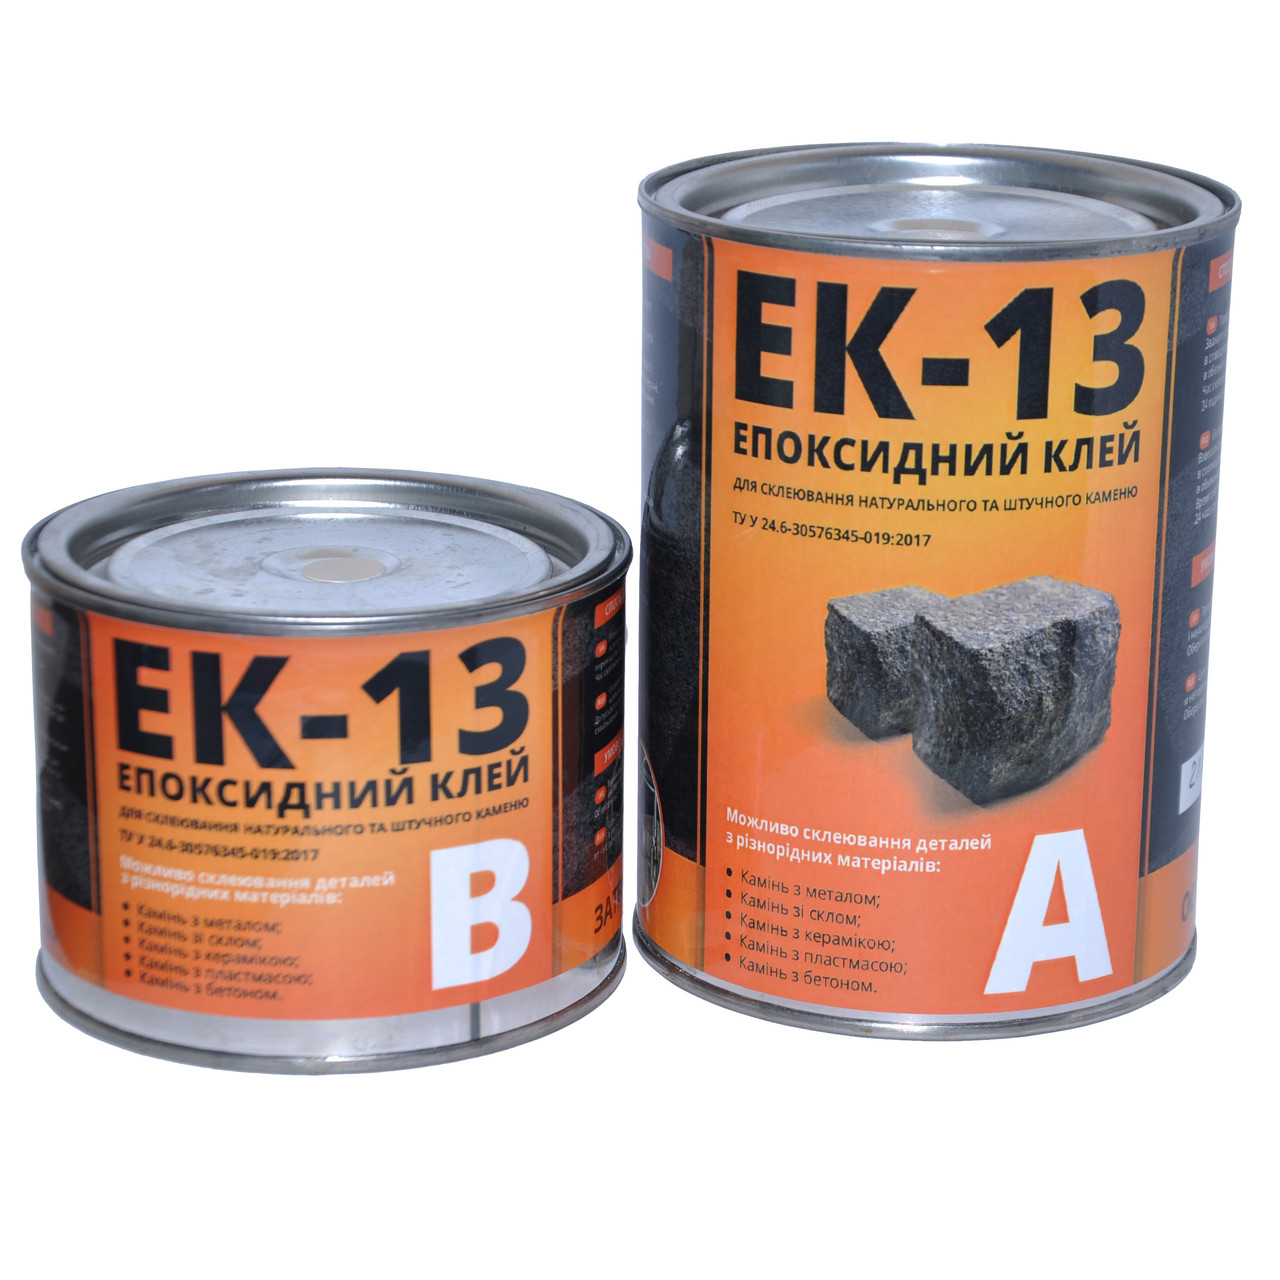 Епоксидний клей ЕК-13 для склеювання натурального та штучного каменю